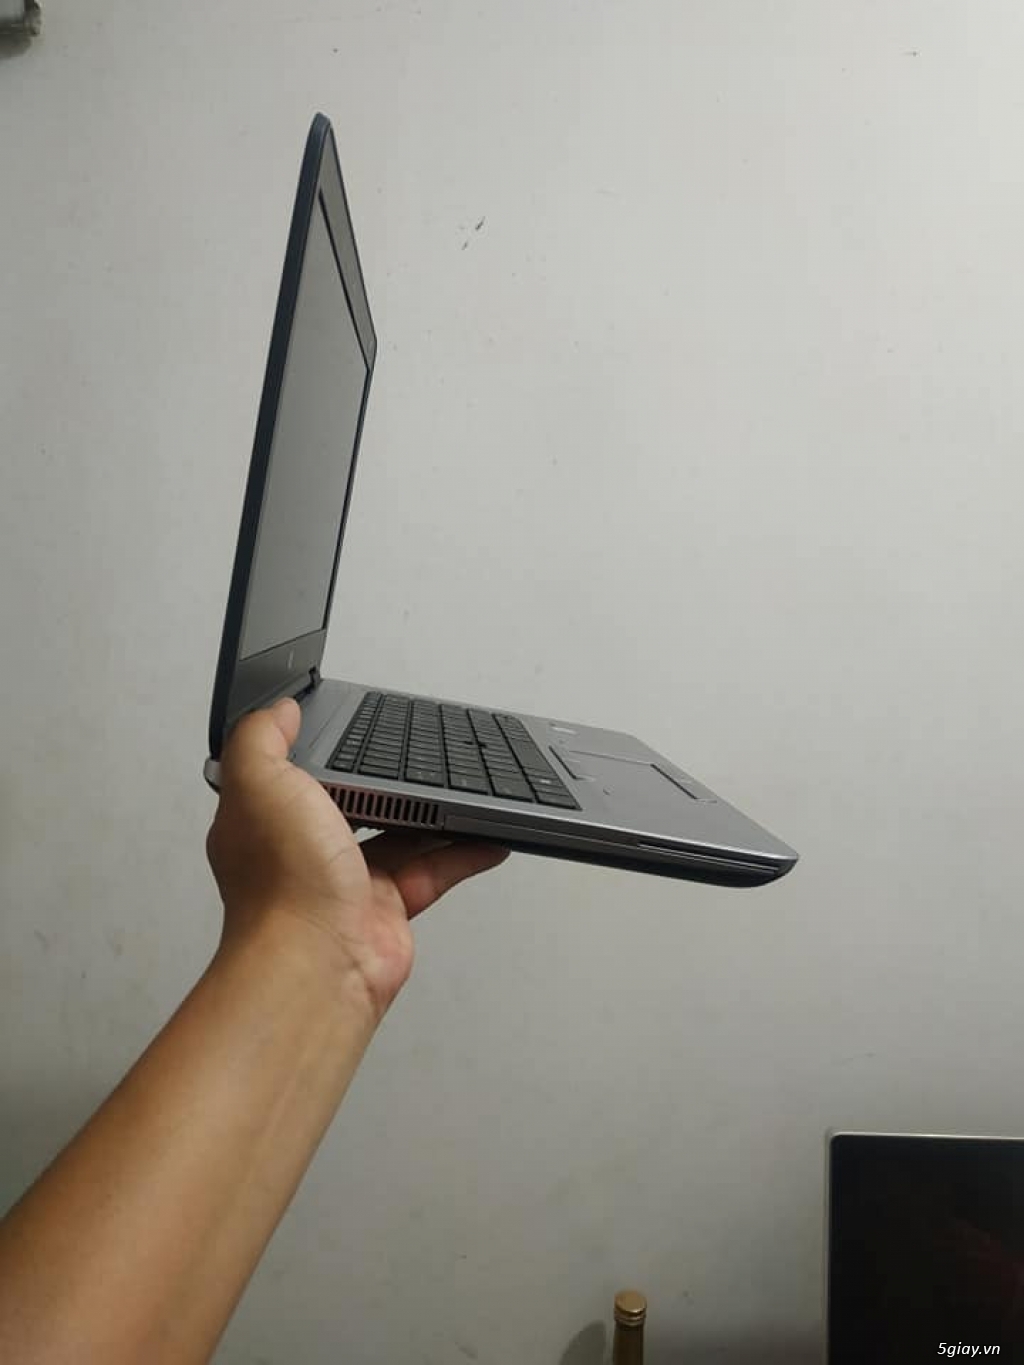 Laptop Hp Probook 640 G3 - Hàng xách tay USA - 1